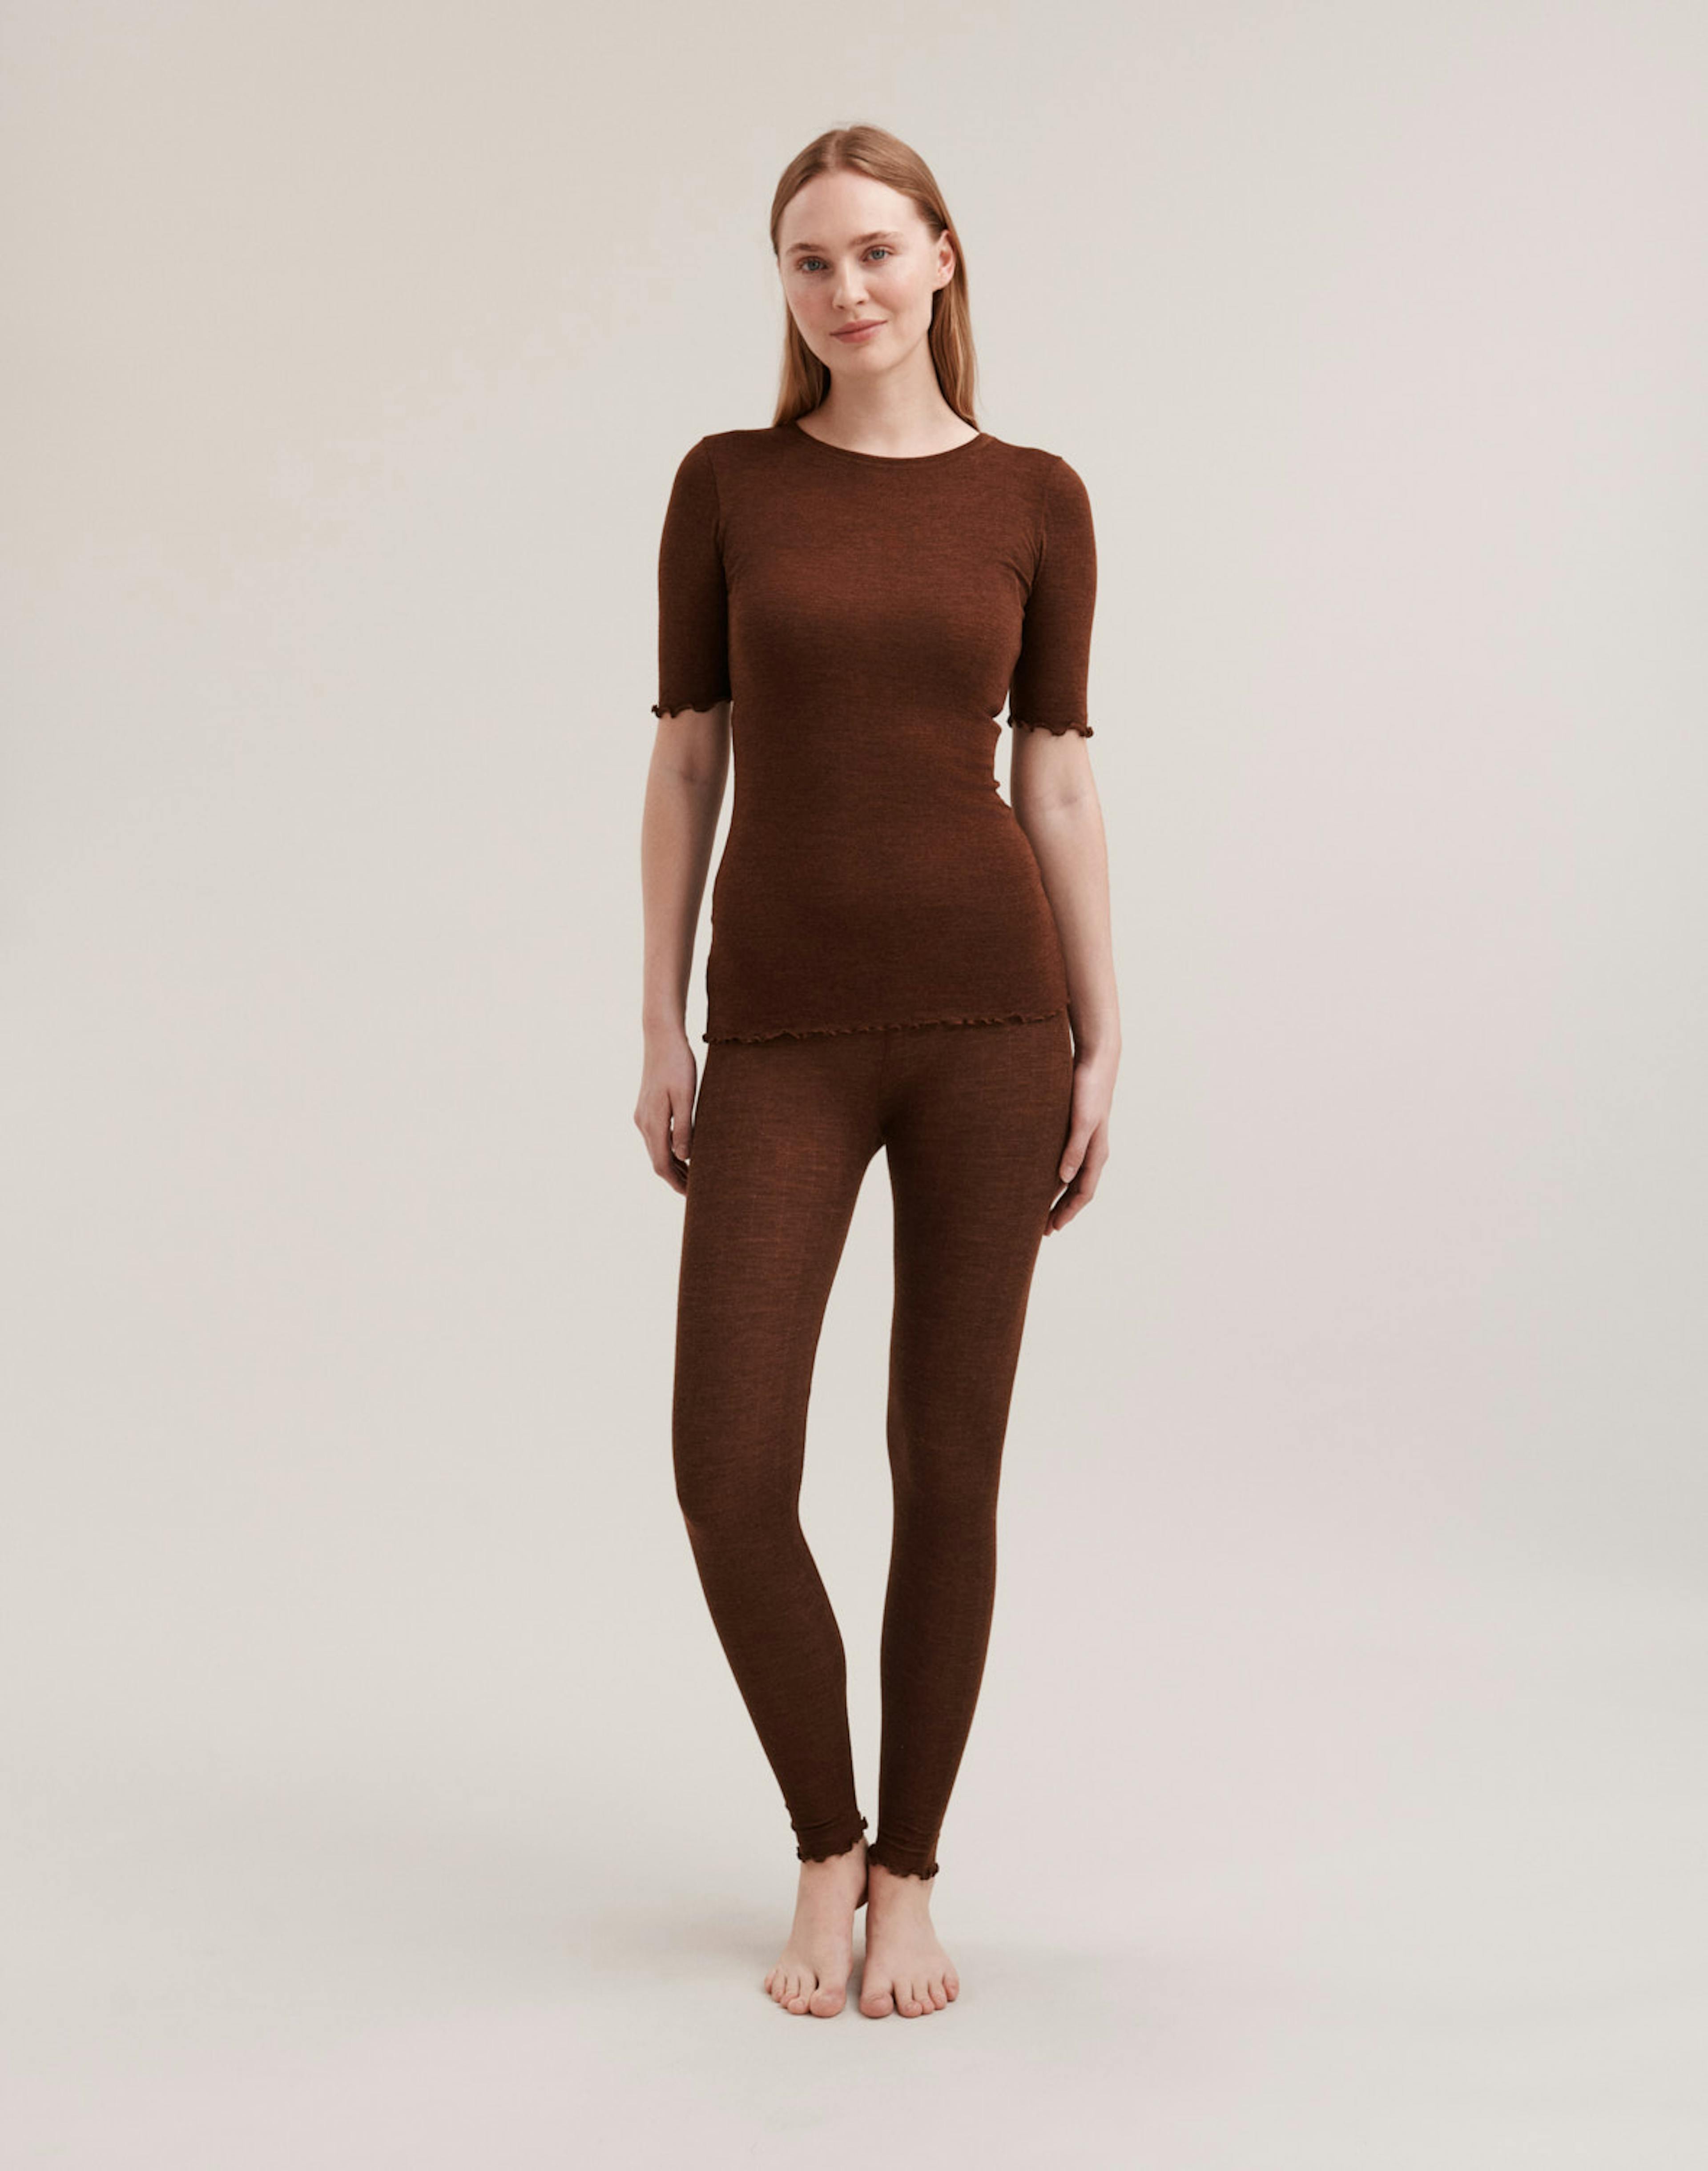 Women's merino wool/silk pointelle leggings - Mocha - Dilling